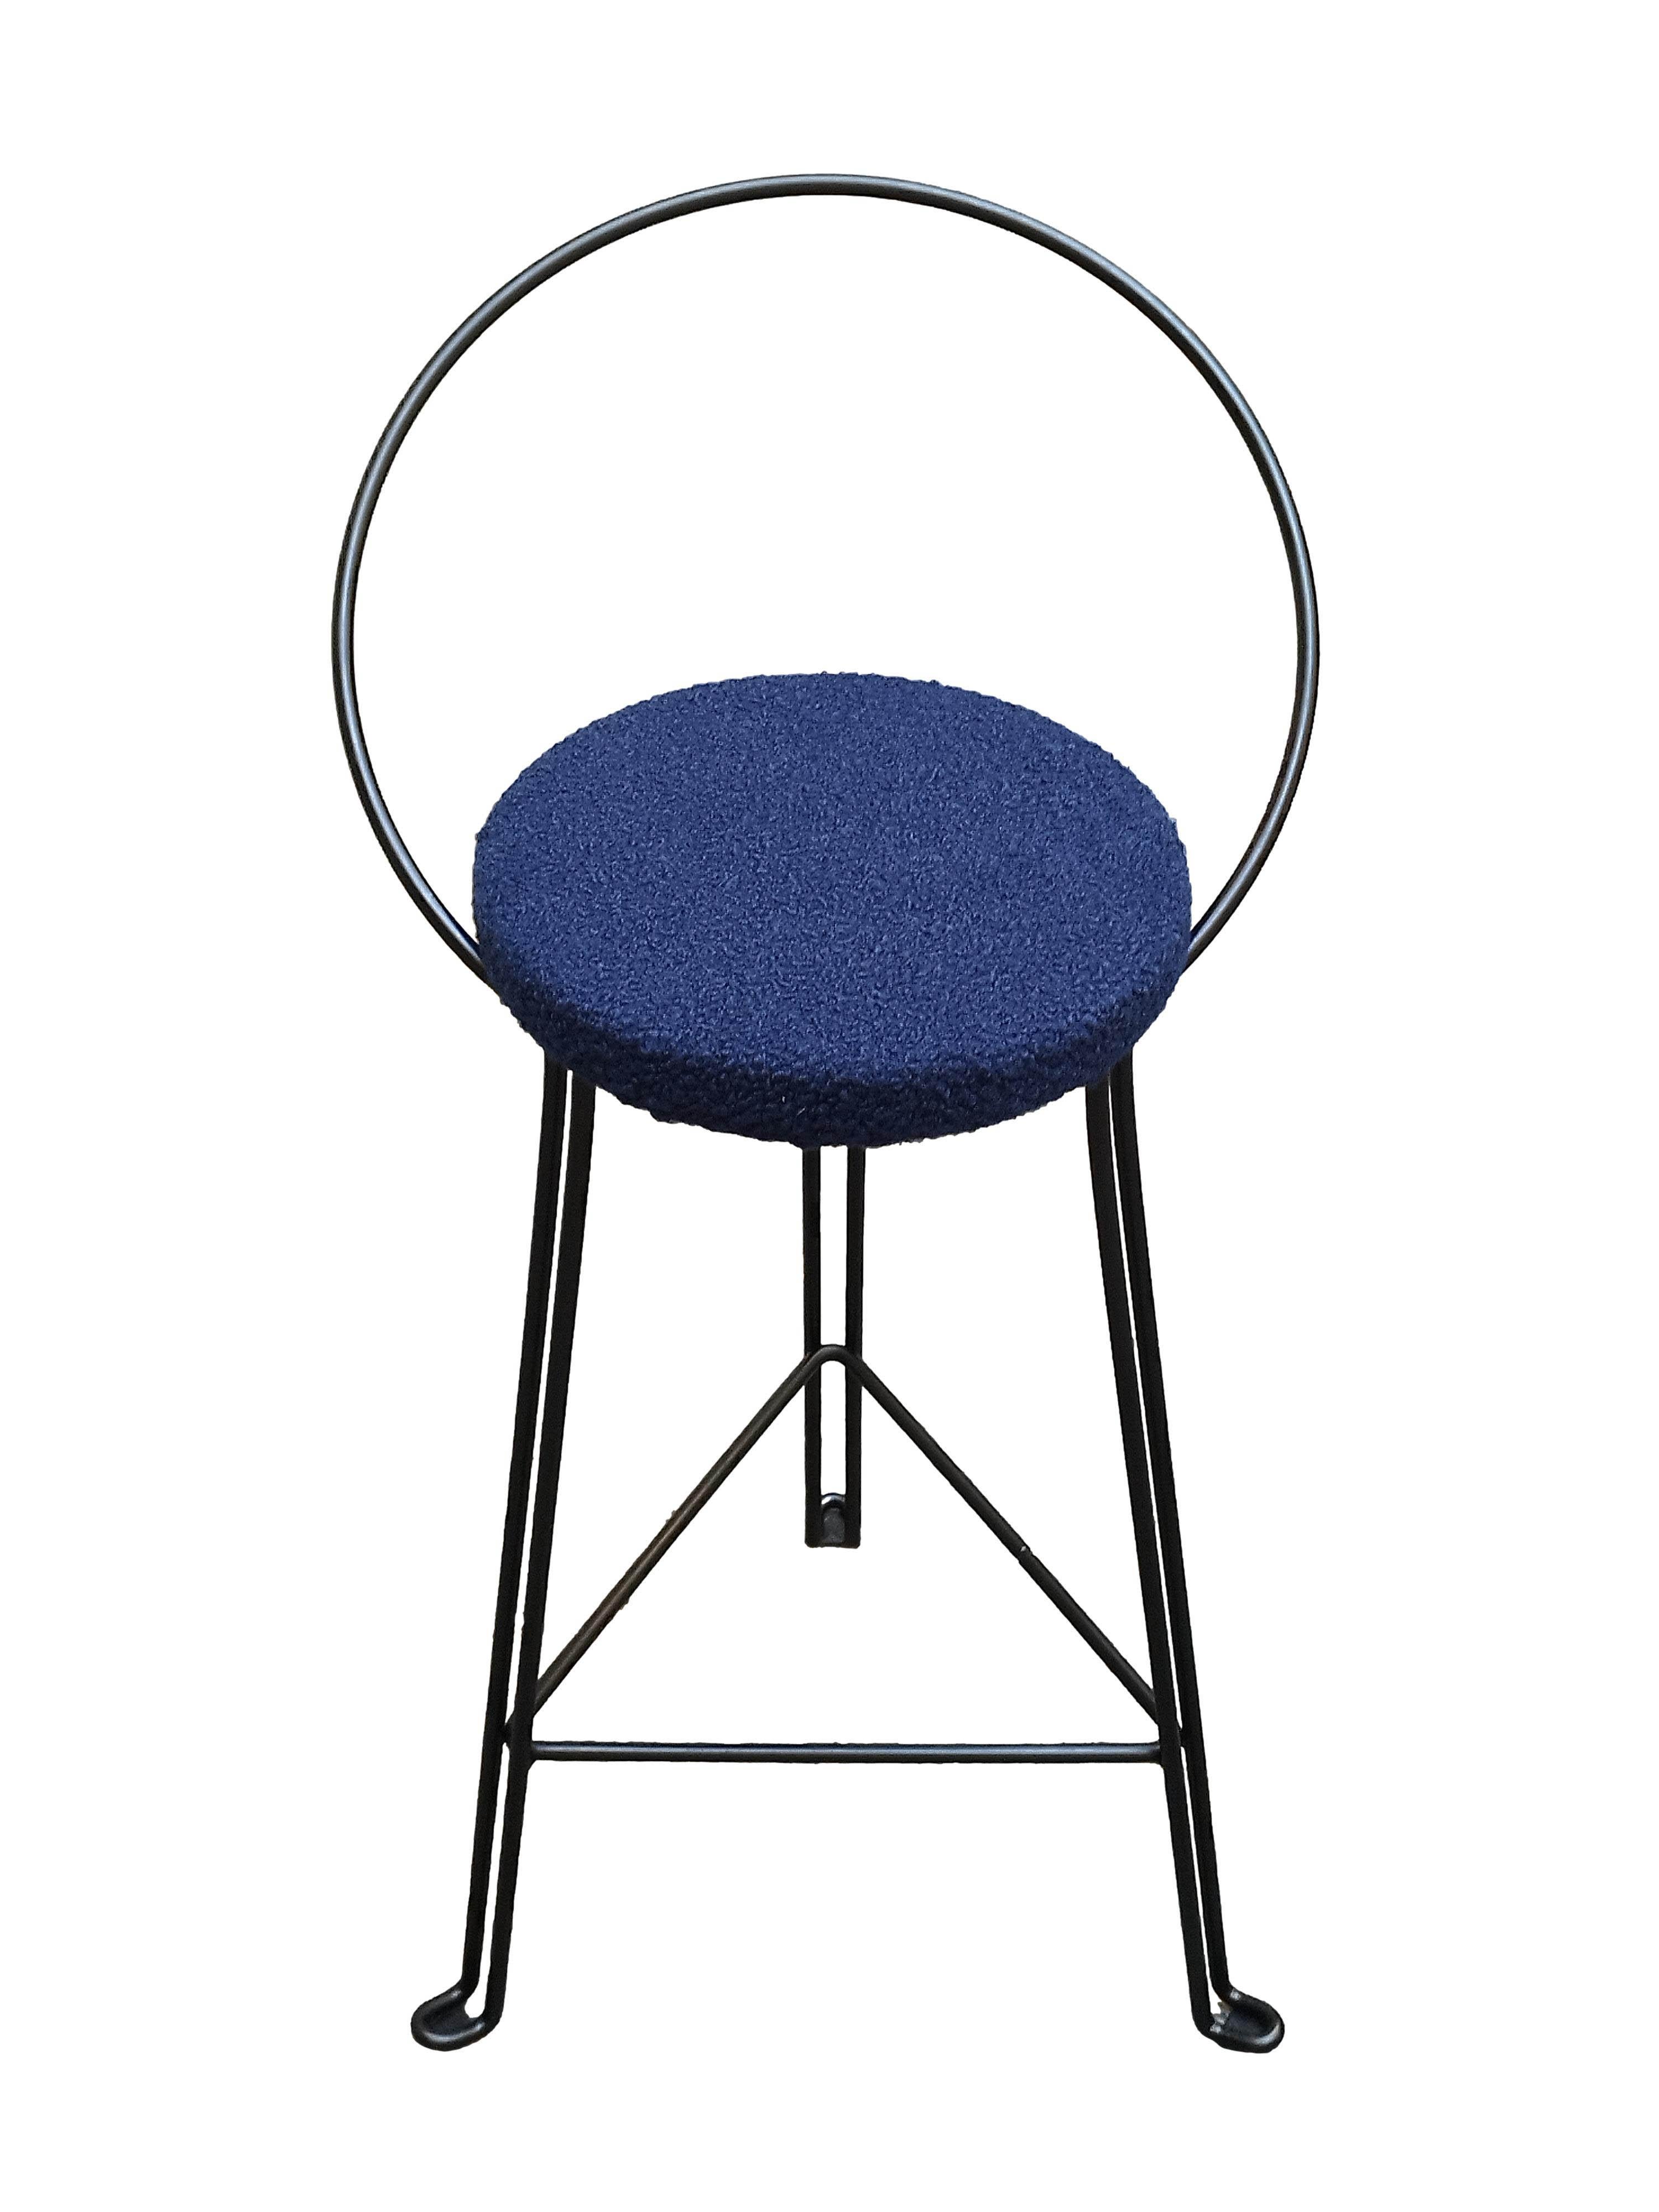 Ce tabouret industriel robuste de style Tomado est doté d'une assise ronde recouverte de tissu bleu et d'une structure en fil d'acier. 